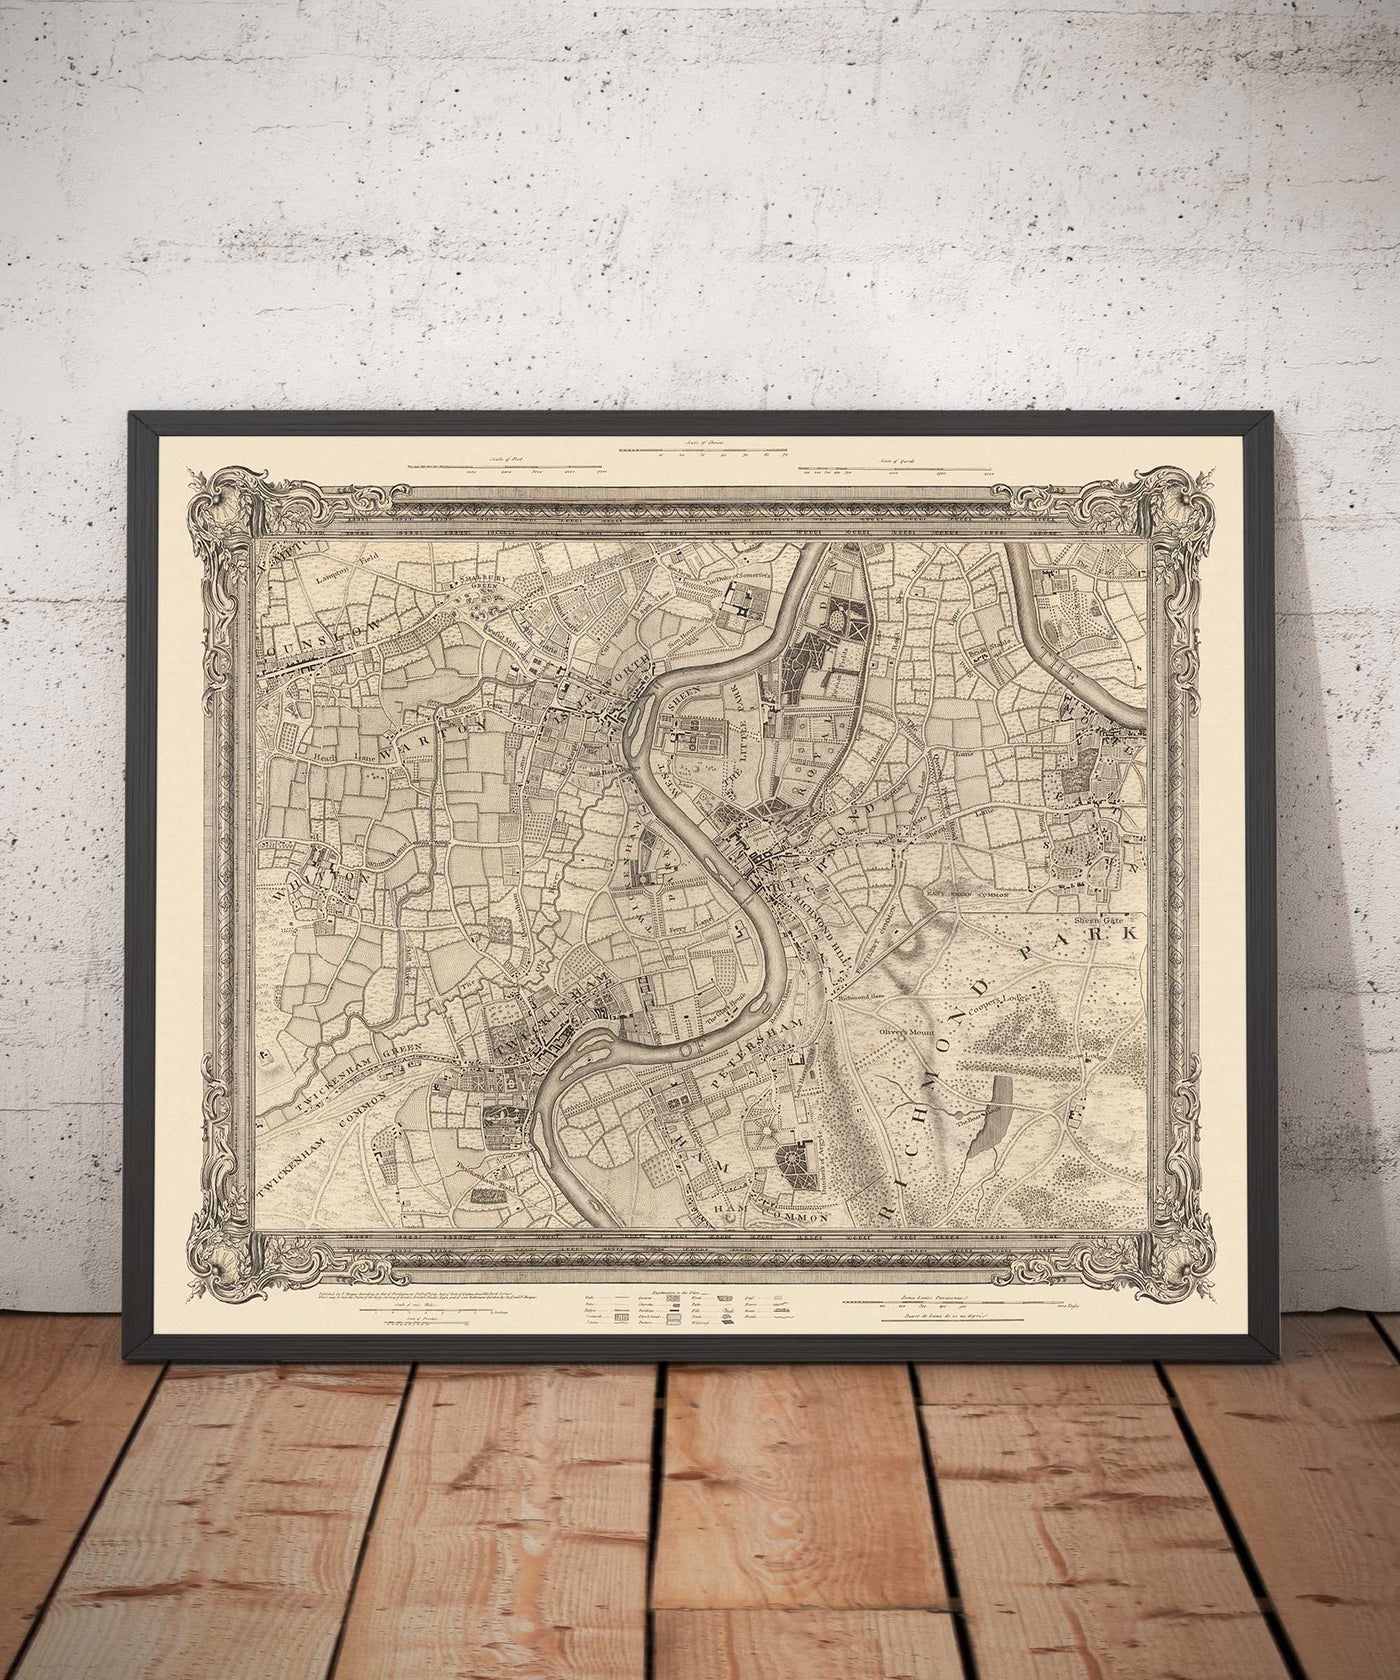 Ancienne carte du sud-ouest de Londres en 1746 par John Rocque - Twickenham, Isleworth, Richmond Park, Hounslow, Whitton, SW14, TW1, TW2, TW4